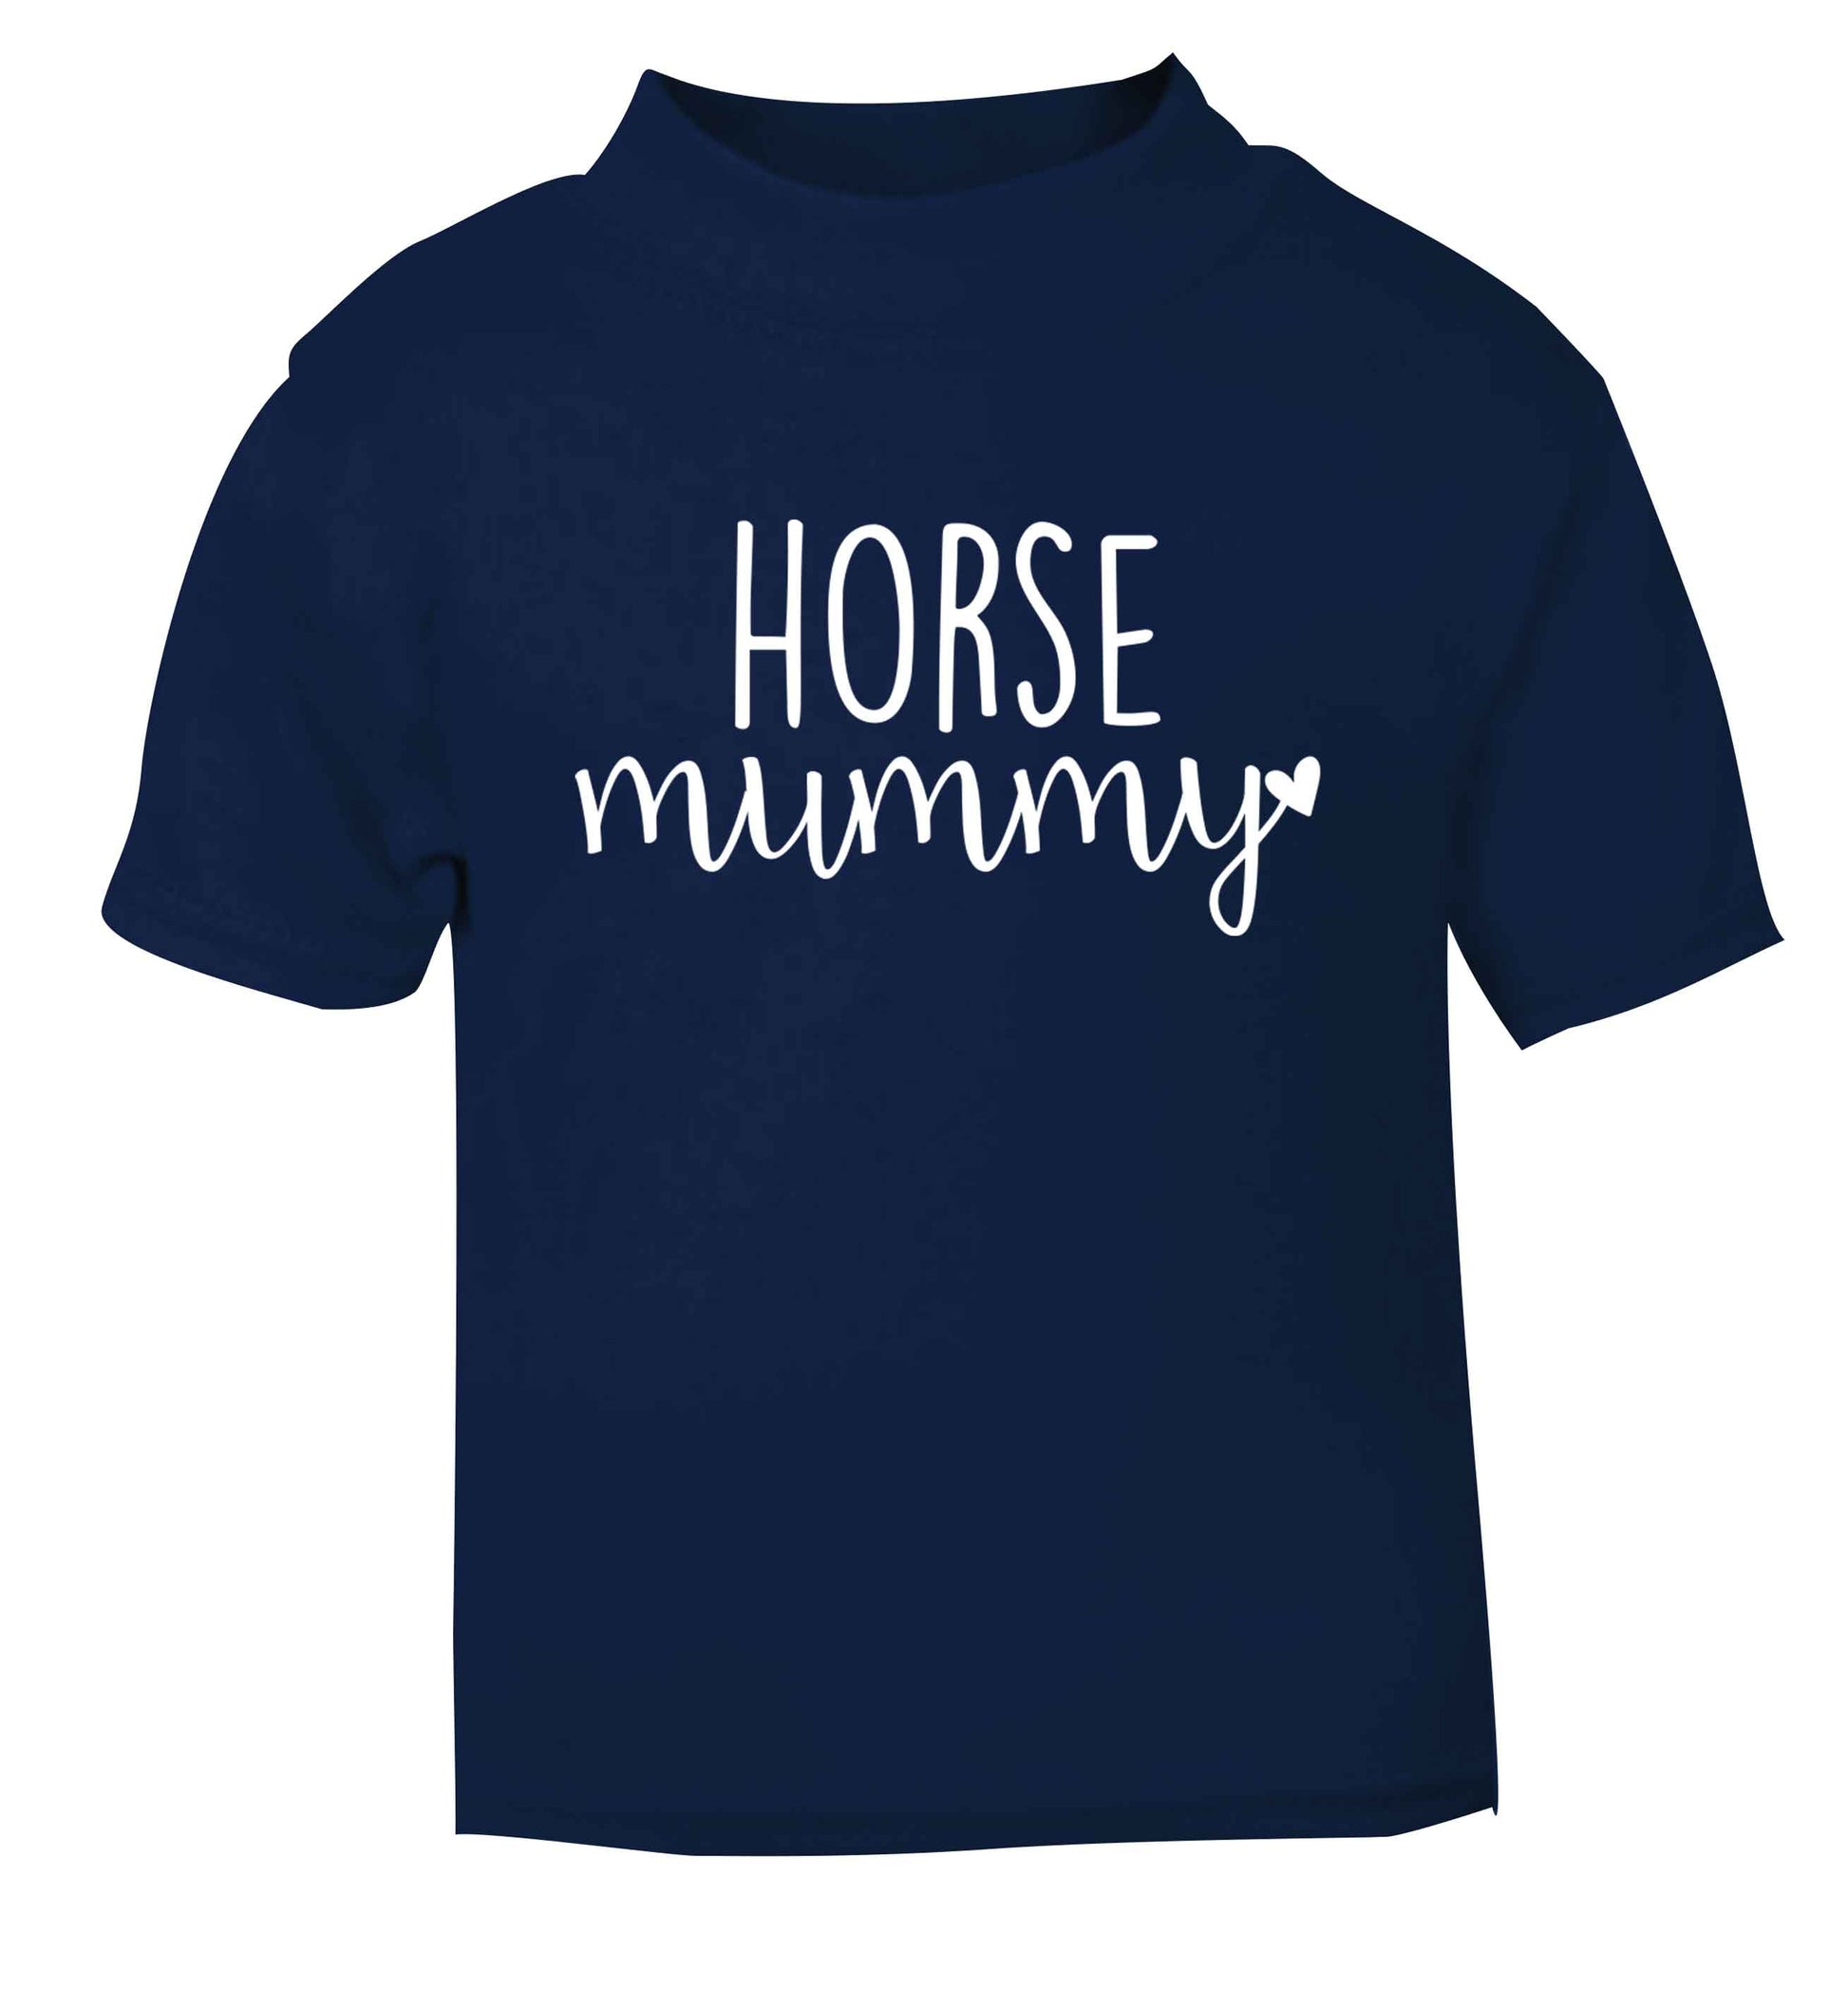 Horse mummy navy baby toddler Tshirt 2 Years